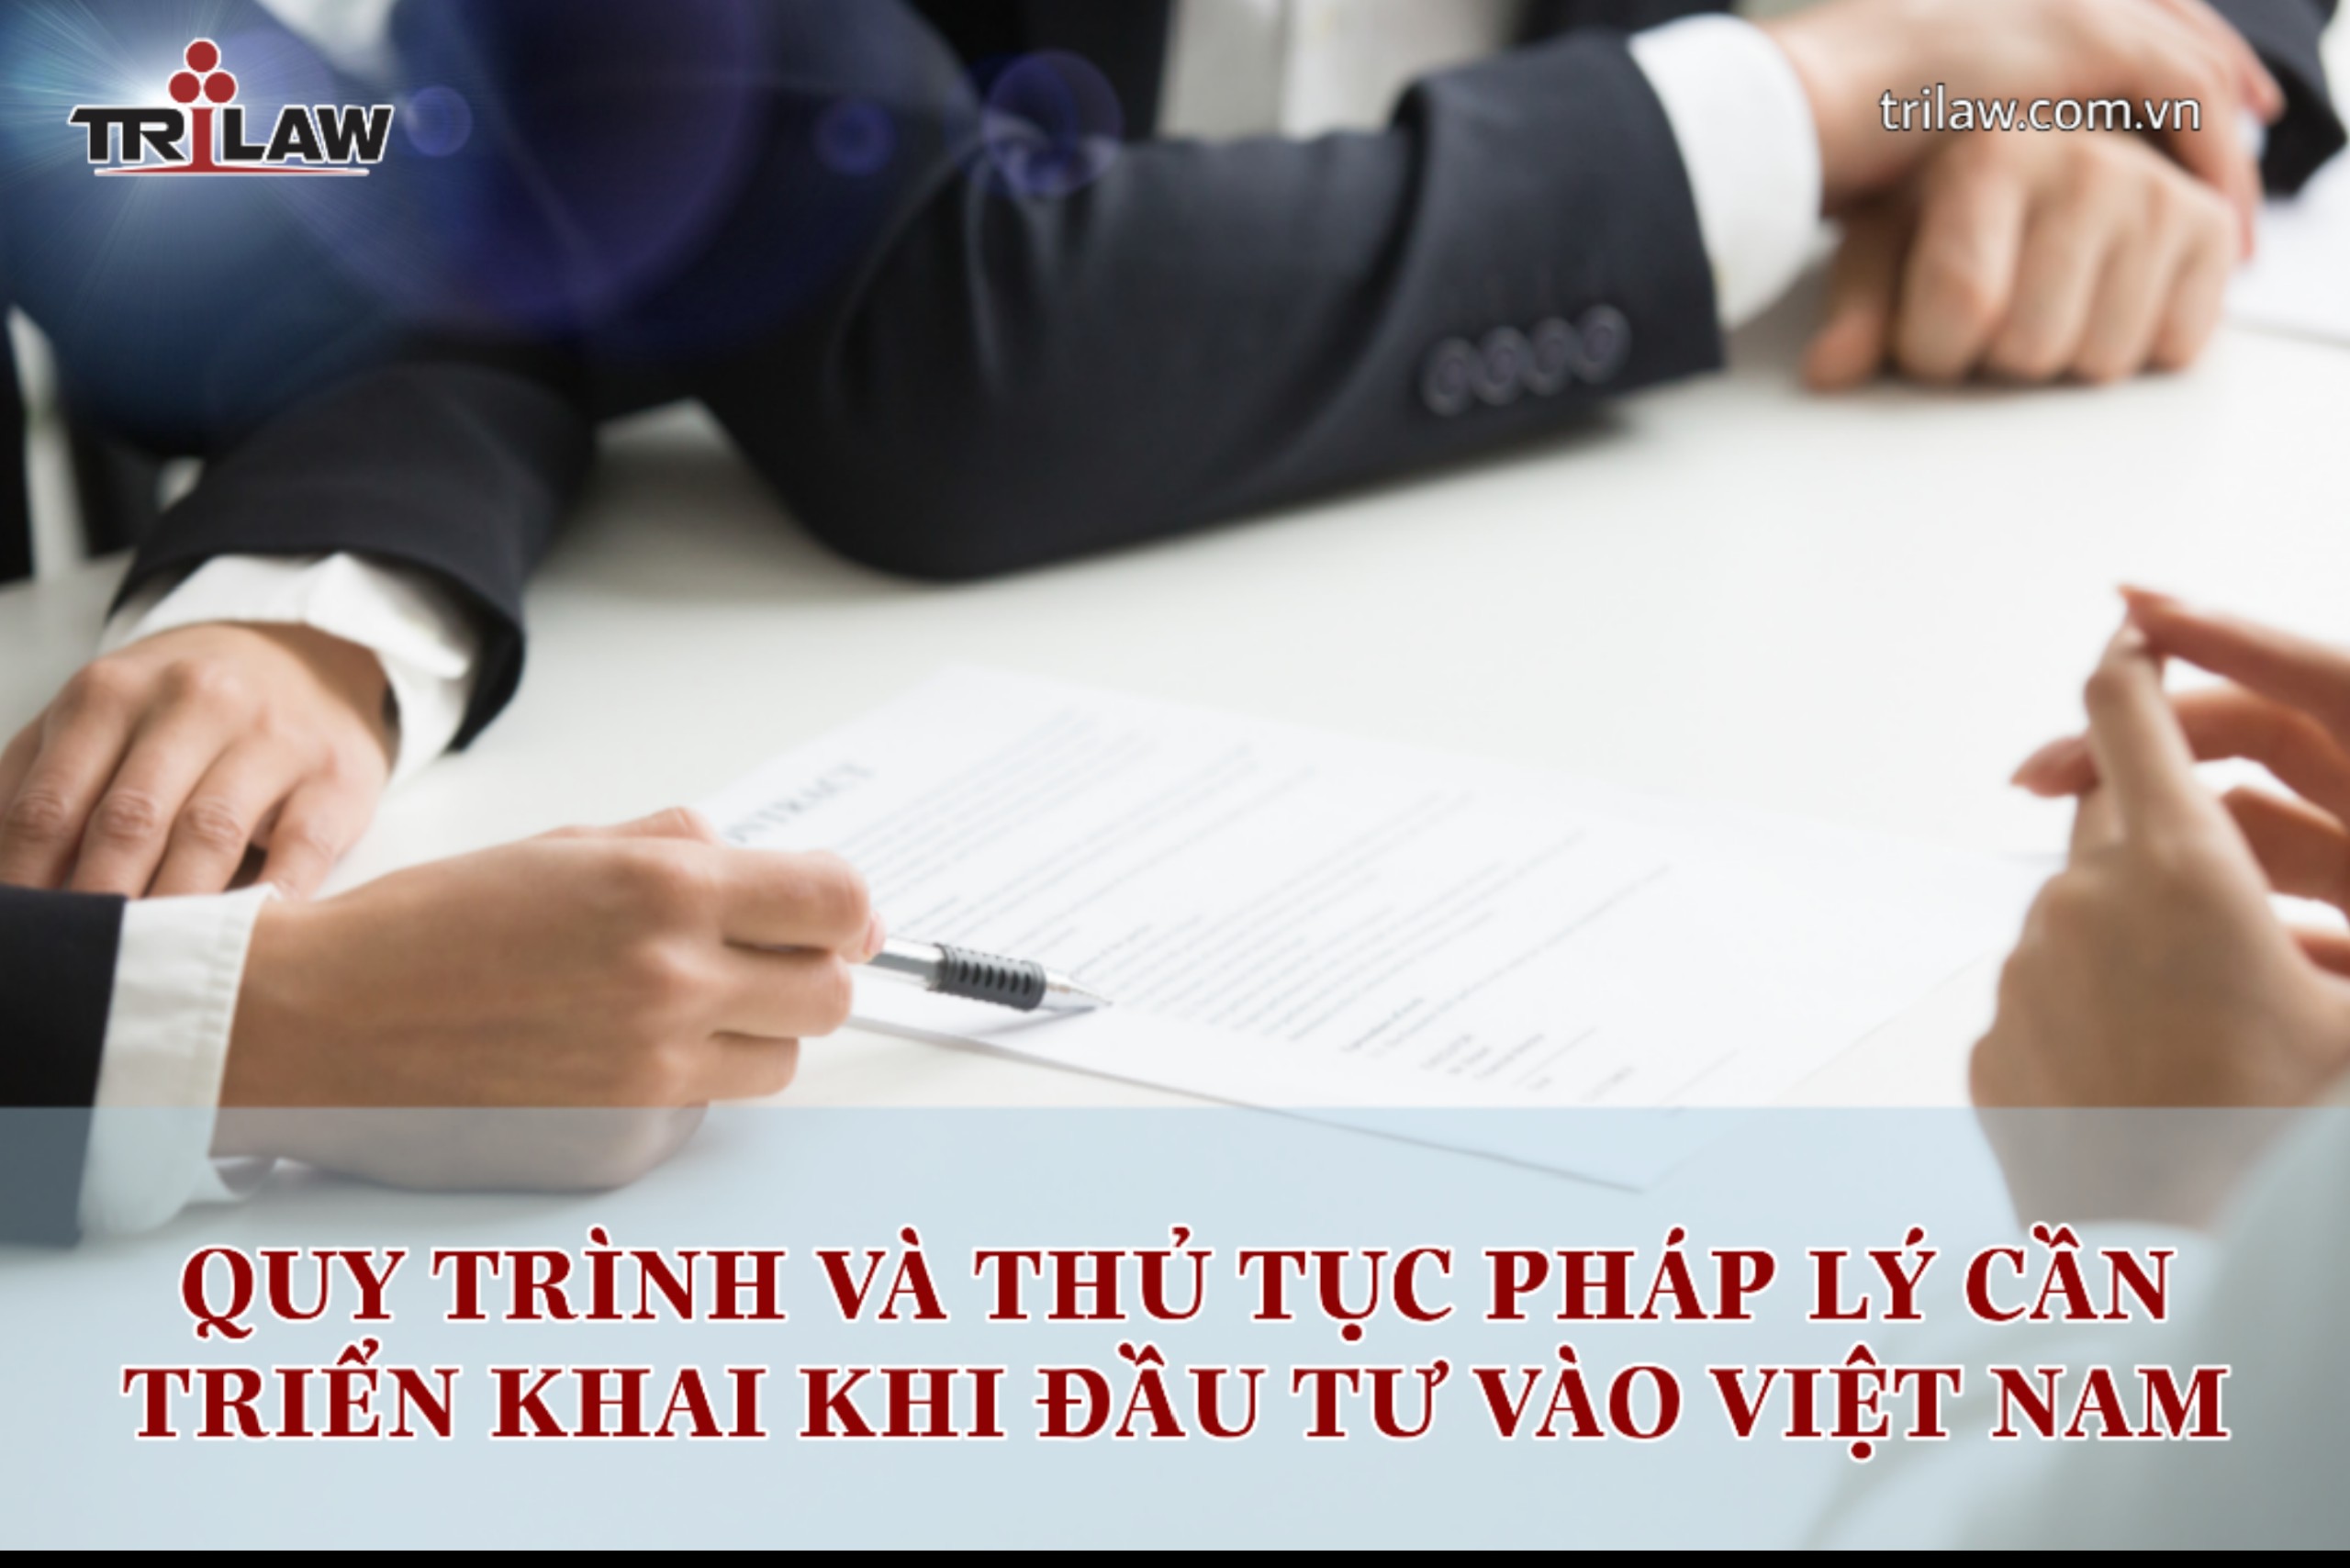 Investment legal consulting - Quy trình và thủ tục pháp lý cần triển khai khi đầu tư vào Việt Nam